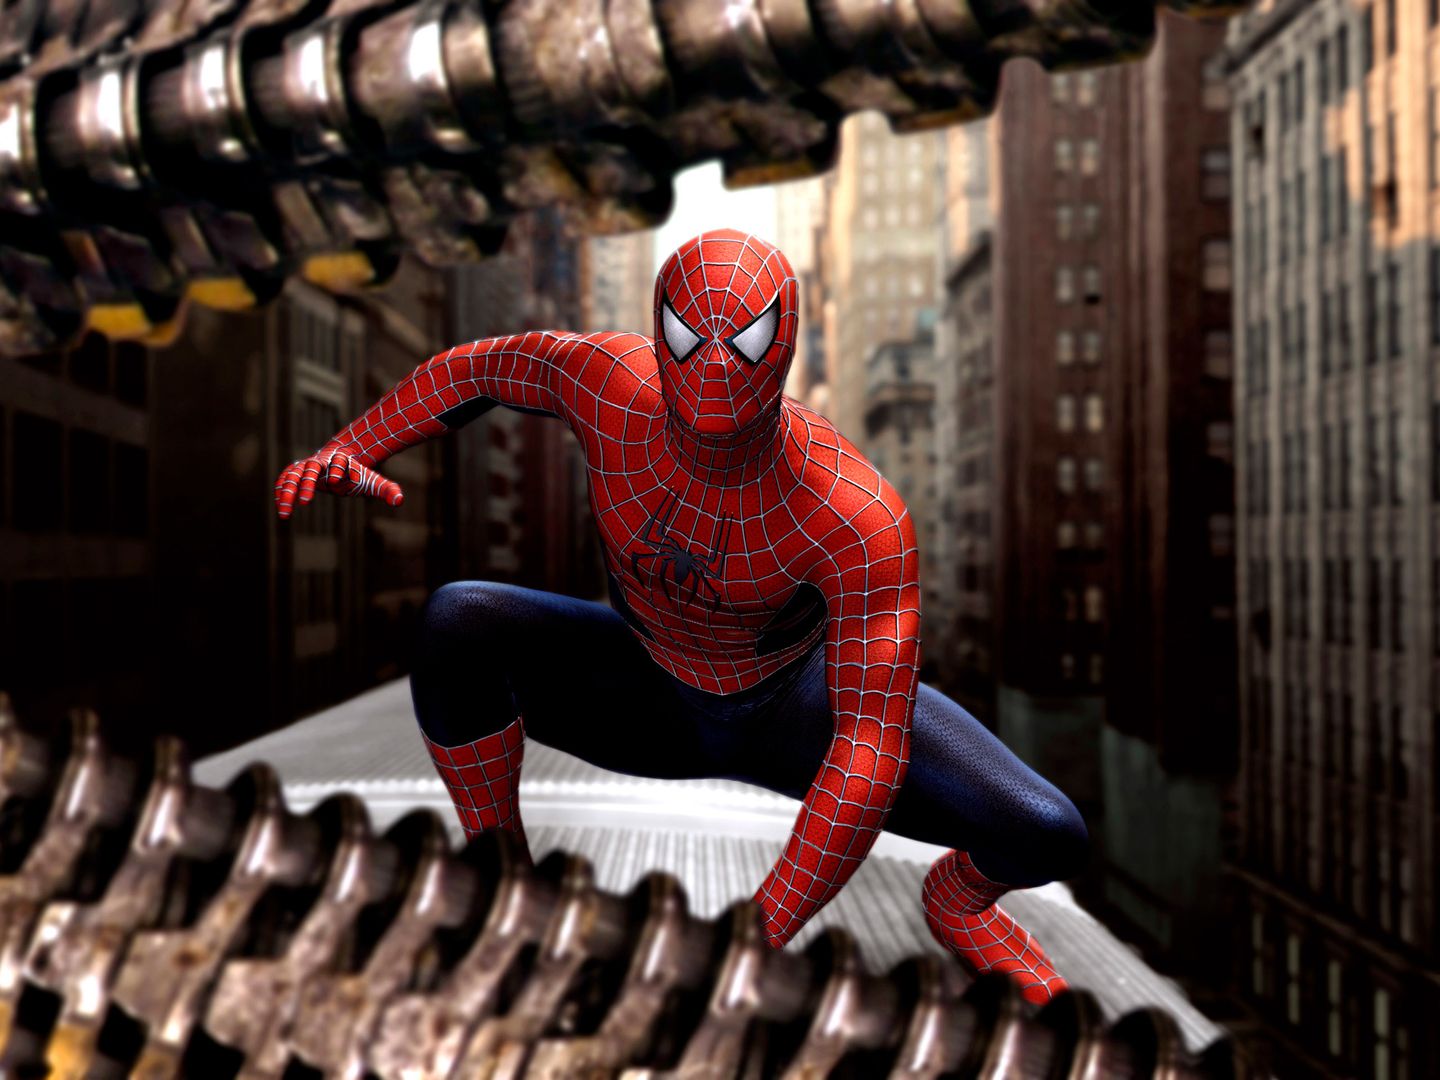 Spider man 2 Тоби Магуайр. Человек паук 2004. Spider man 2 Tobey Maguire.